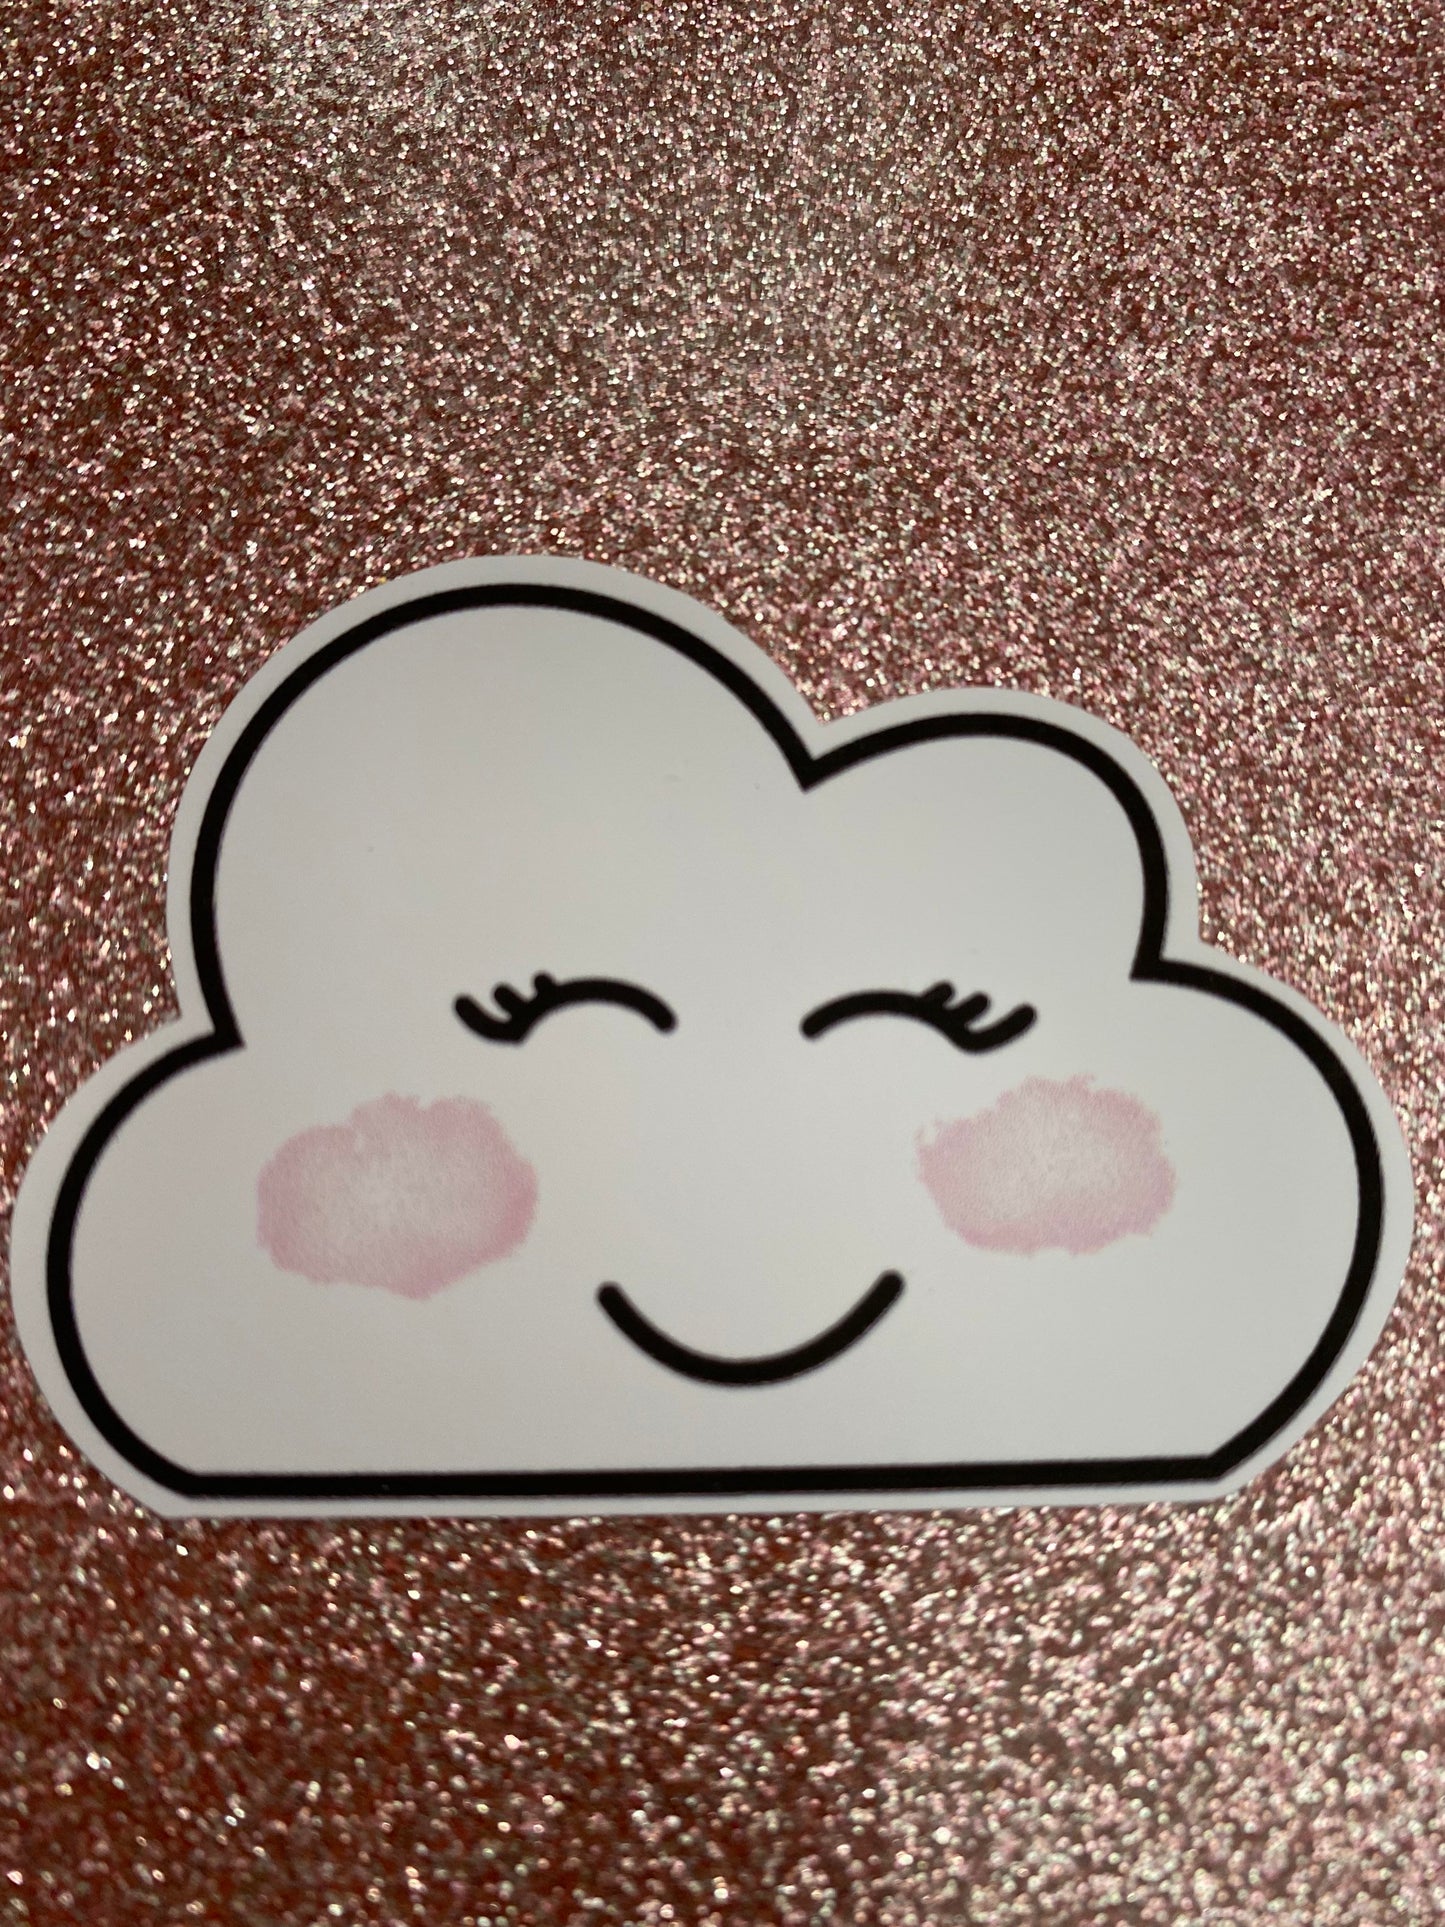 Smiley cloud sticker, planner sticker